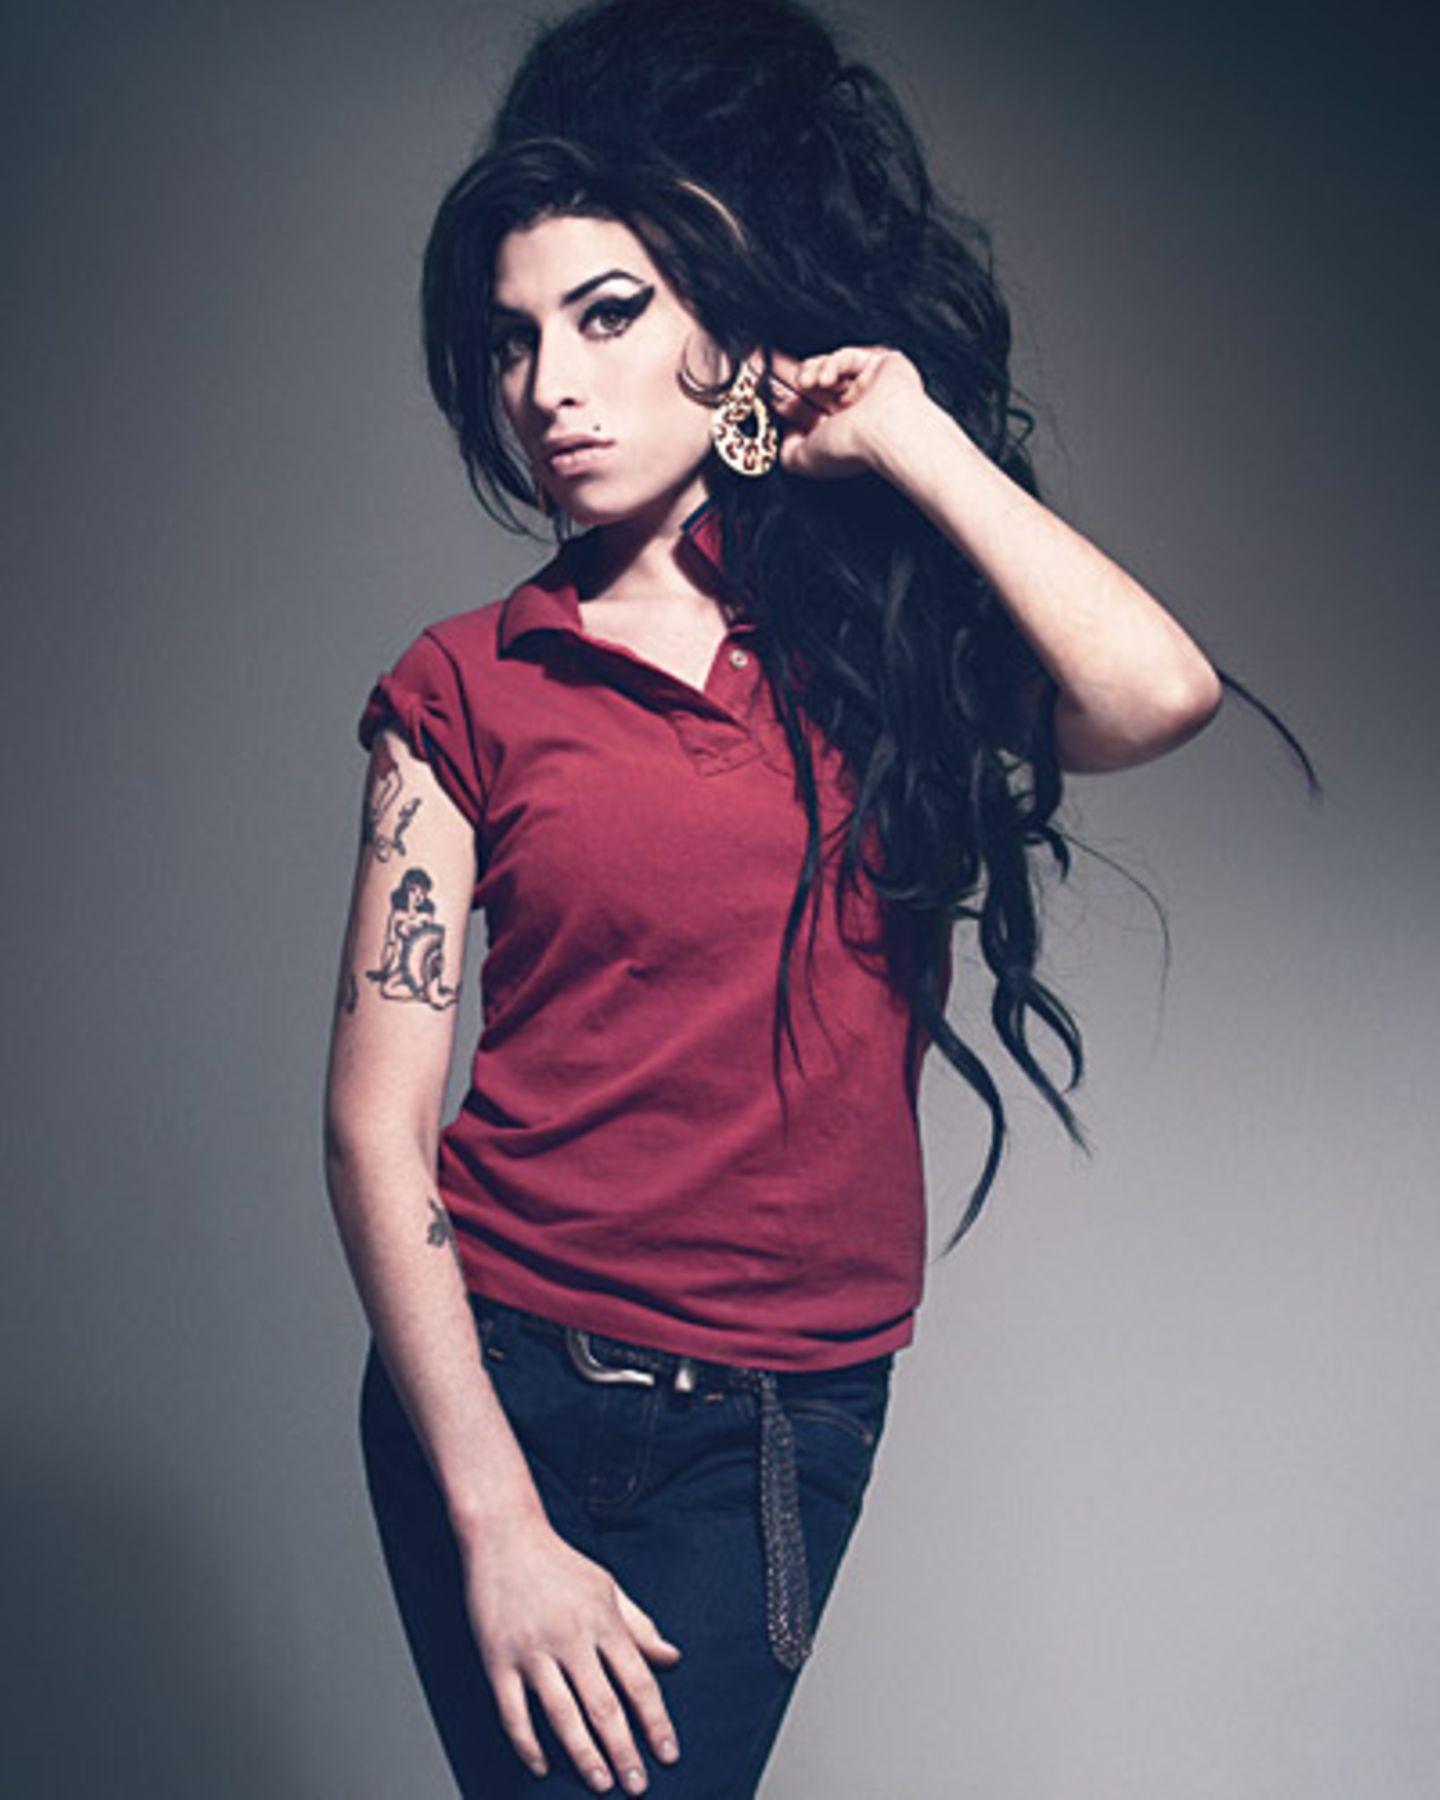 Bryan Adams hat nicht nur Talent als Musiker, sondern weiß auch wie man Stars wie Amy Winehouse gekonnt auf die Fotoleinwand ban